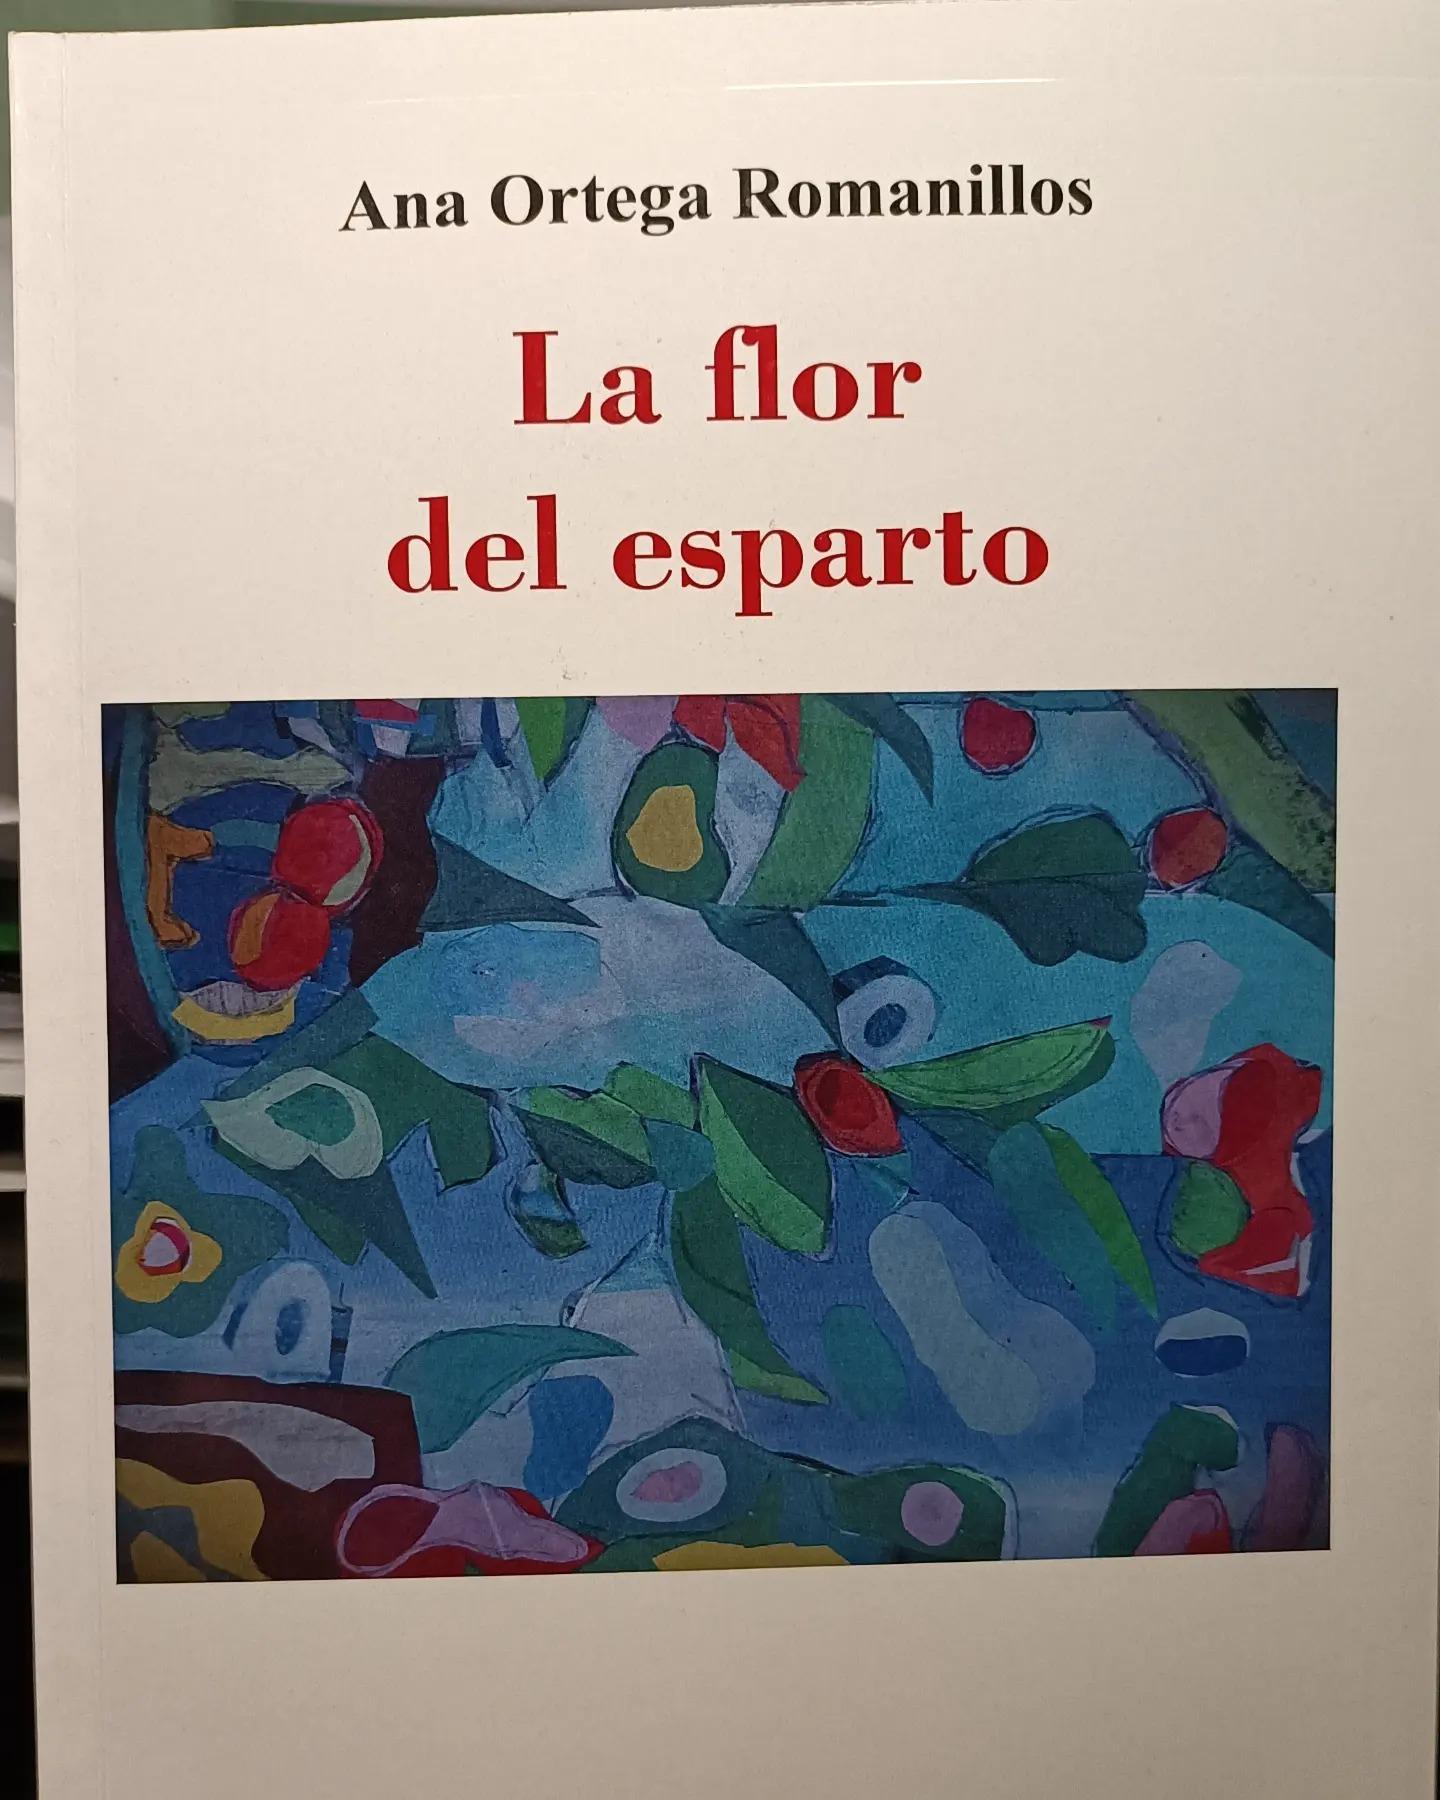 El poemario ‘La flor del esparto’ de Ana Ortega Romanillos se presenta en Madrid. 22 de febrero